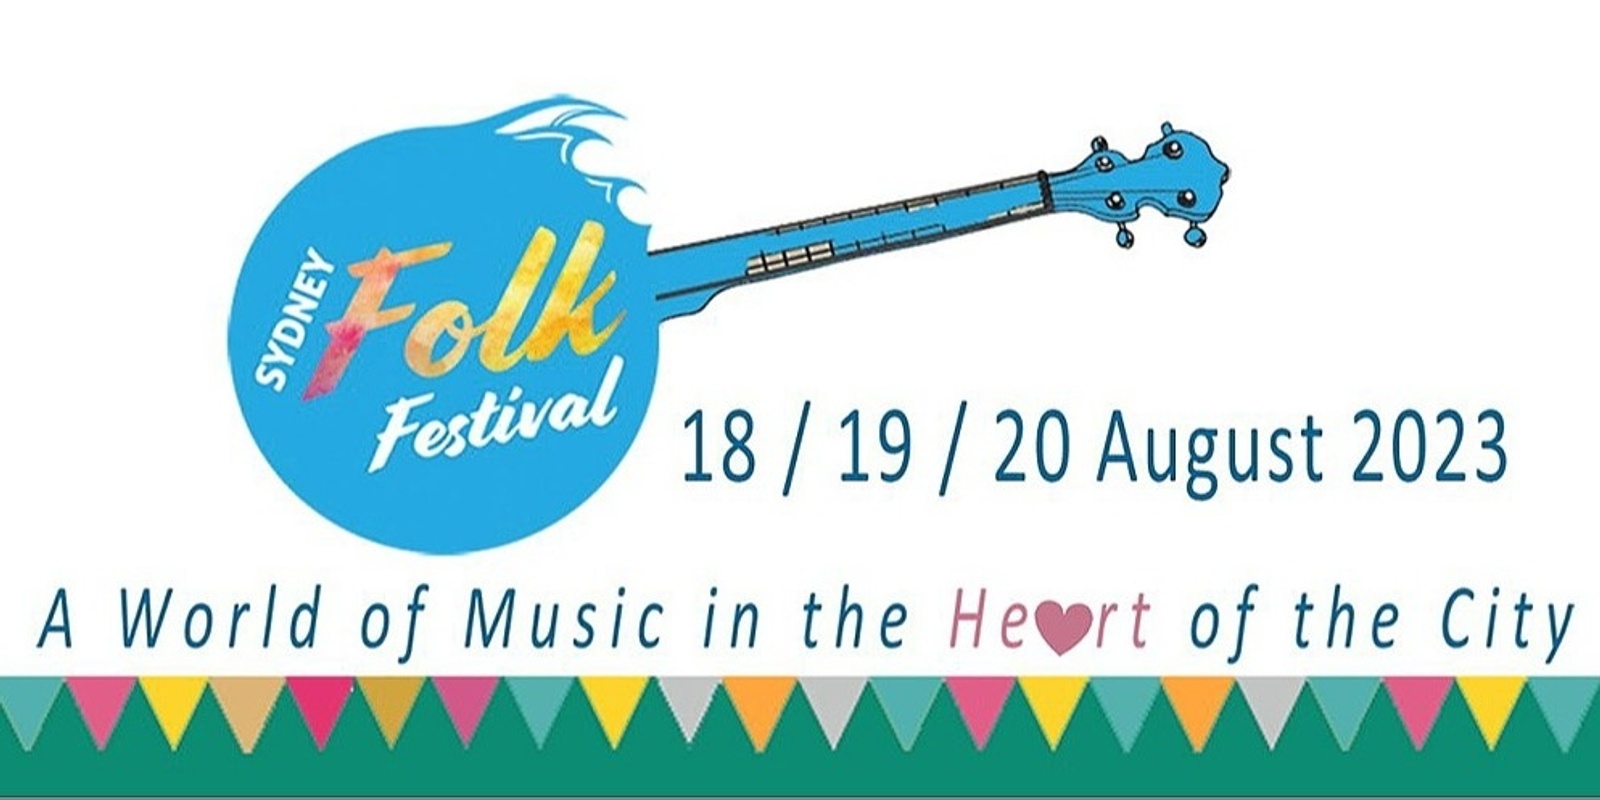 Banner image for Sydney Folk Festival 2023